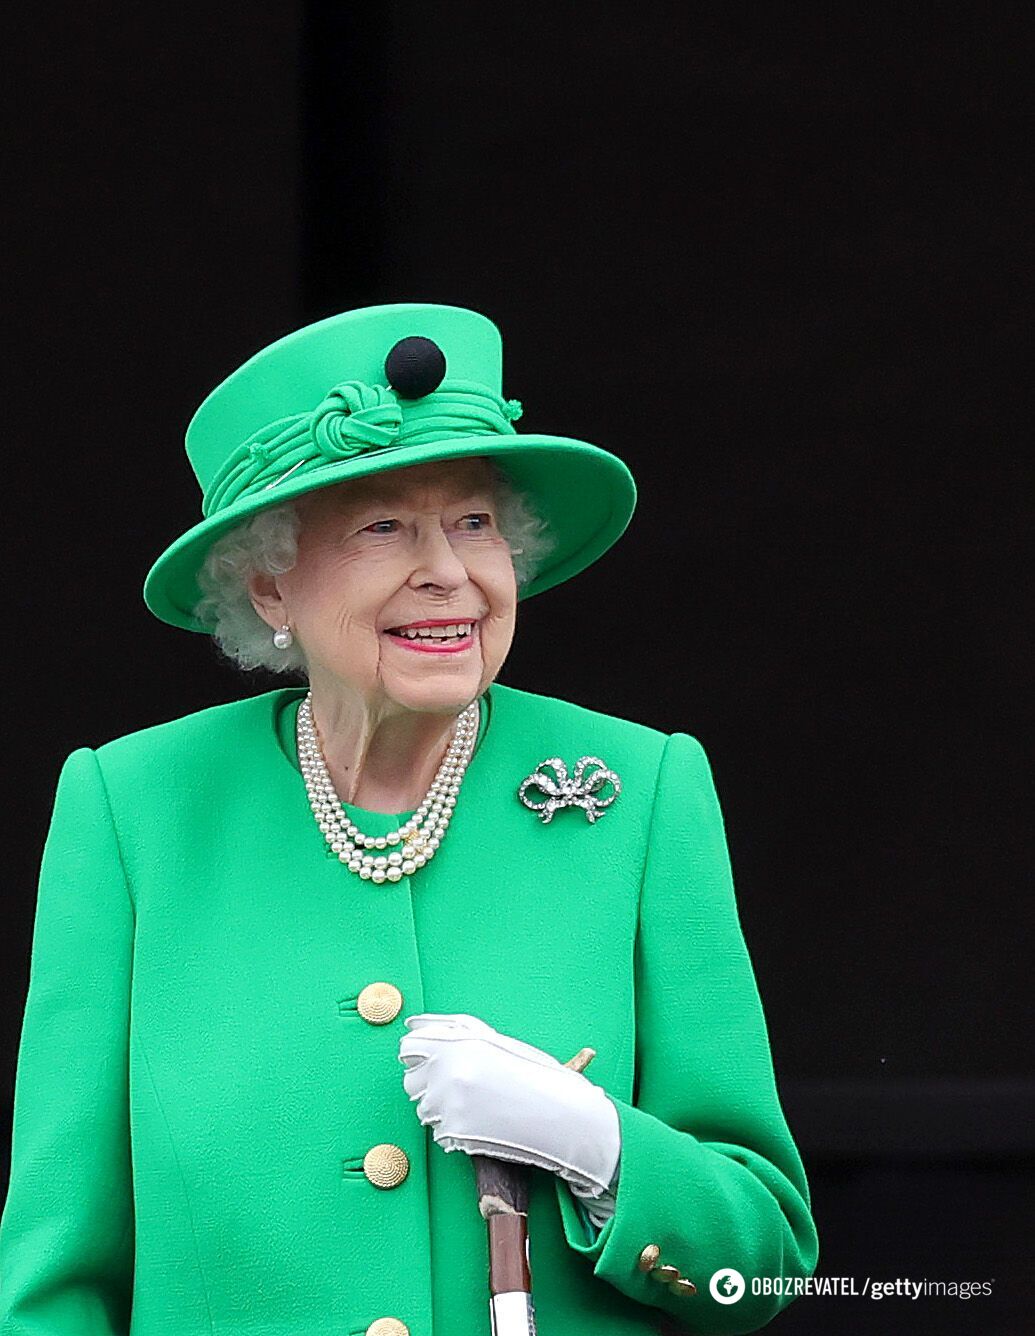 Chciała być postrzegana jako królowa. Jak wyglądało ostatnie wystąpienie chorej Elżbiety II na balkonie Pałacu Buckingham?